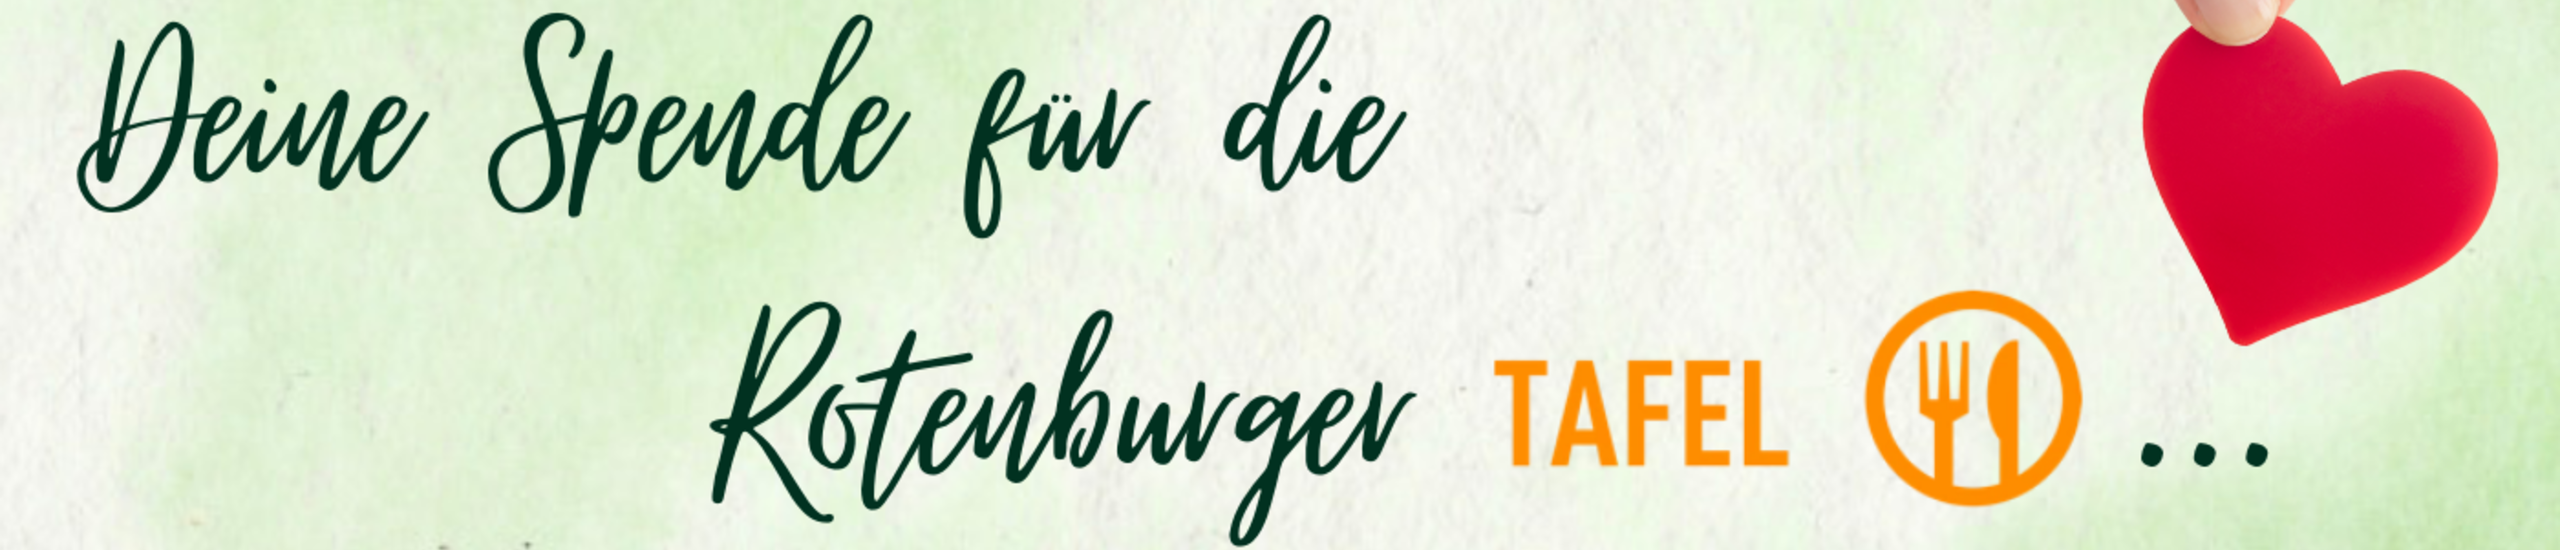 Spendenaktion Pfingsten - Rotenburger Tafel